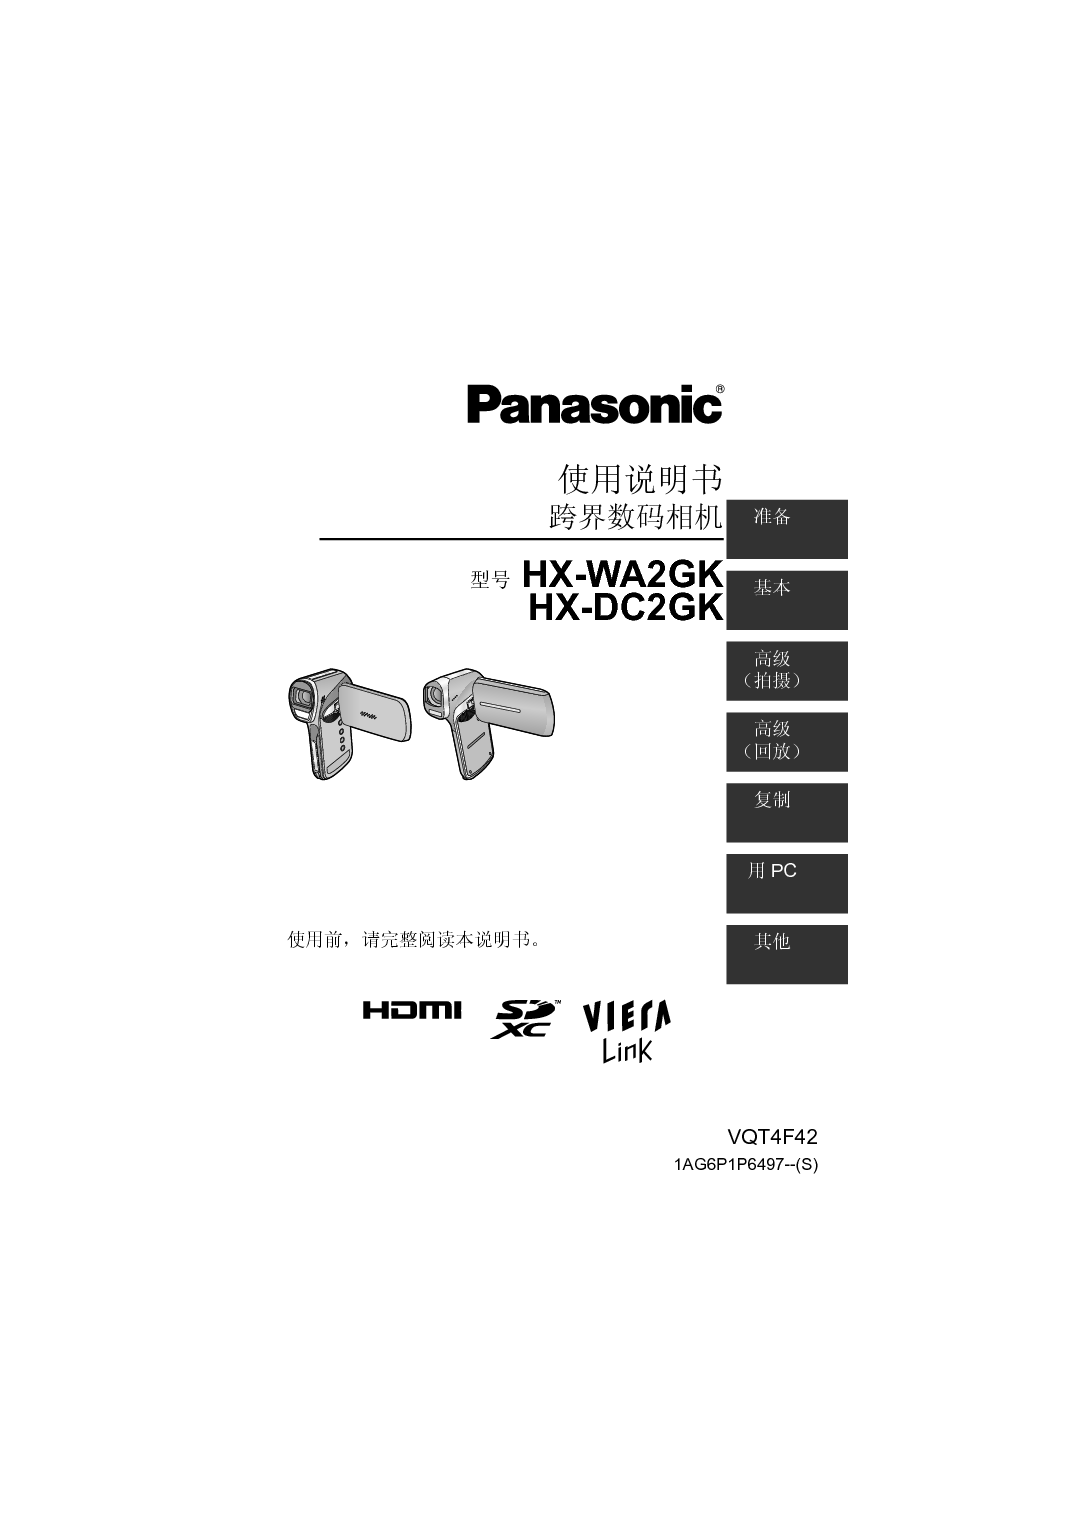 松下 Panasonic HX-DC2GK 高级说明书 封面